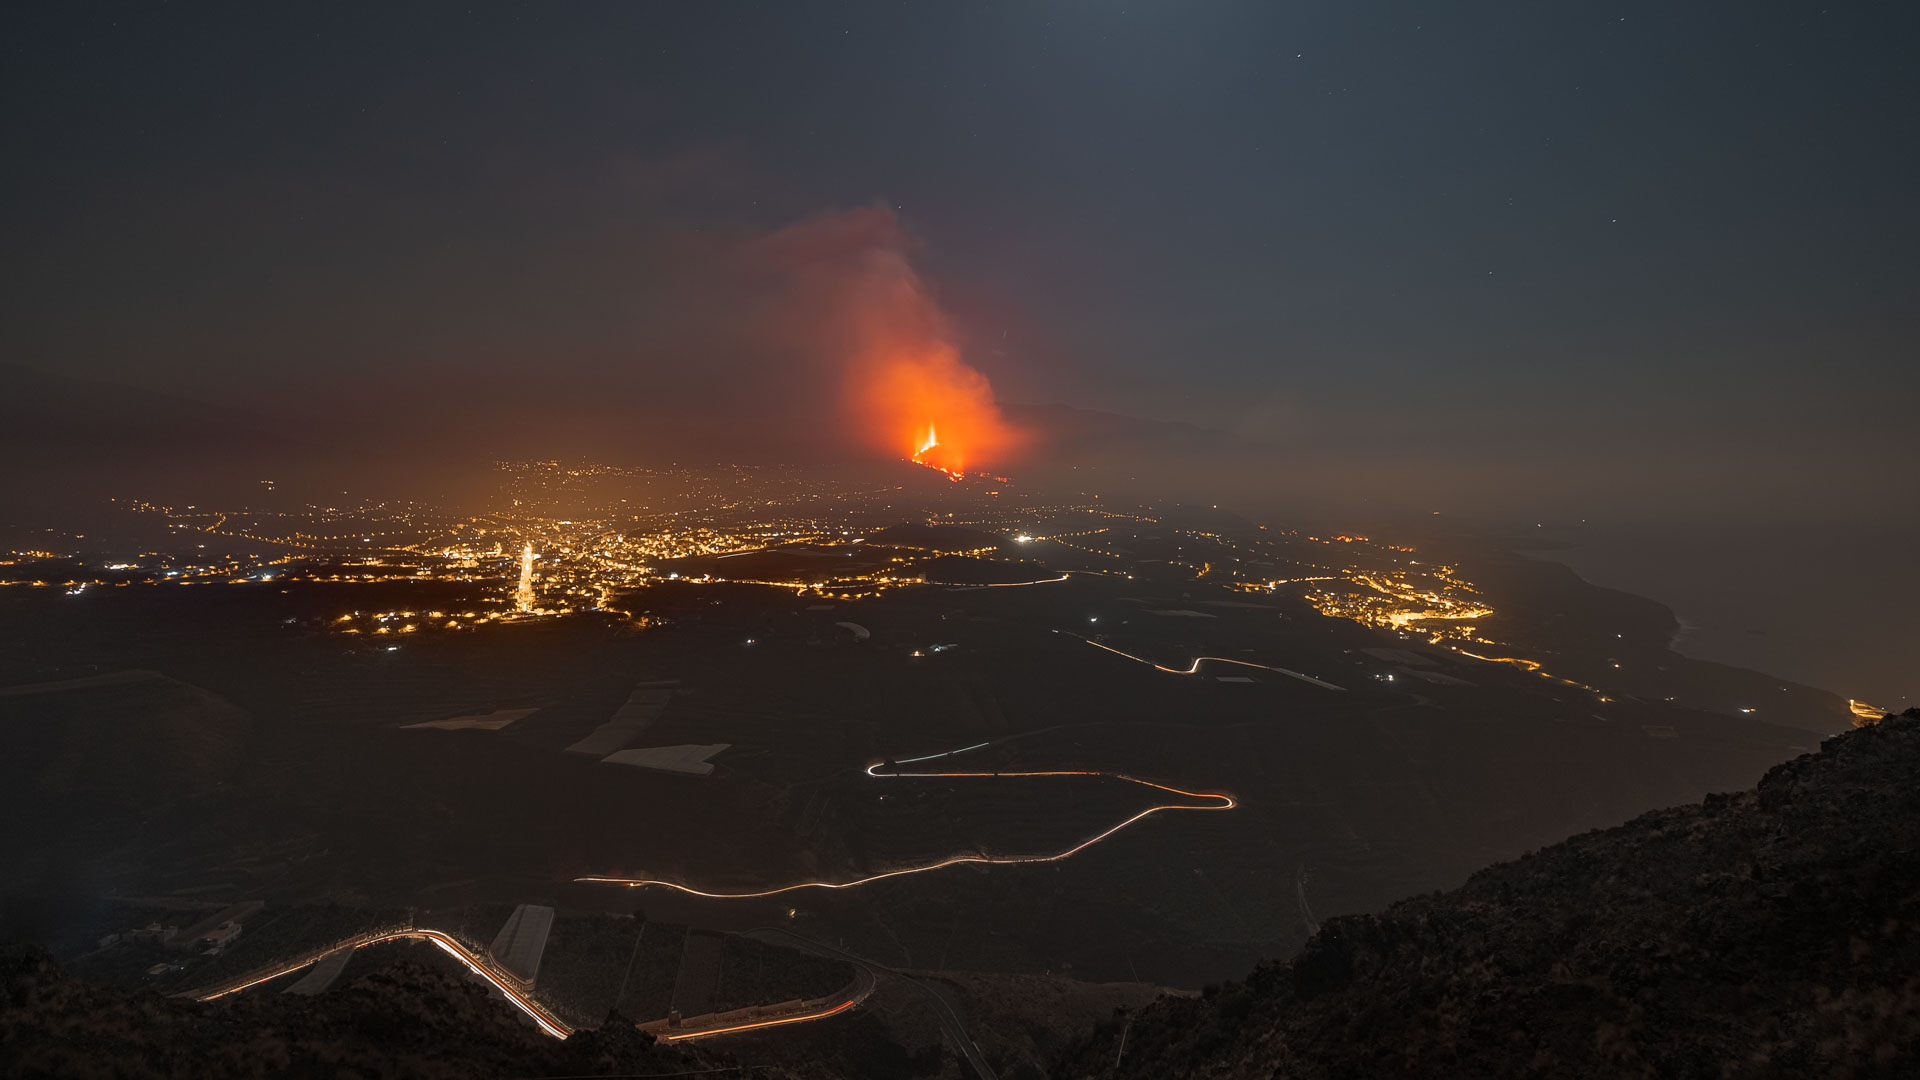 Imagen en la que aparece un volcán en erupción rodeado de las luces de carretera y ciudades cercanas